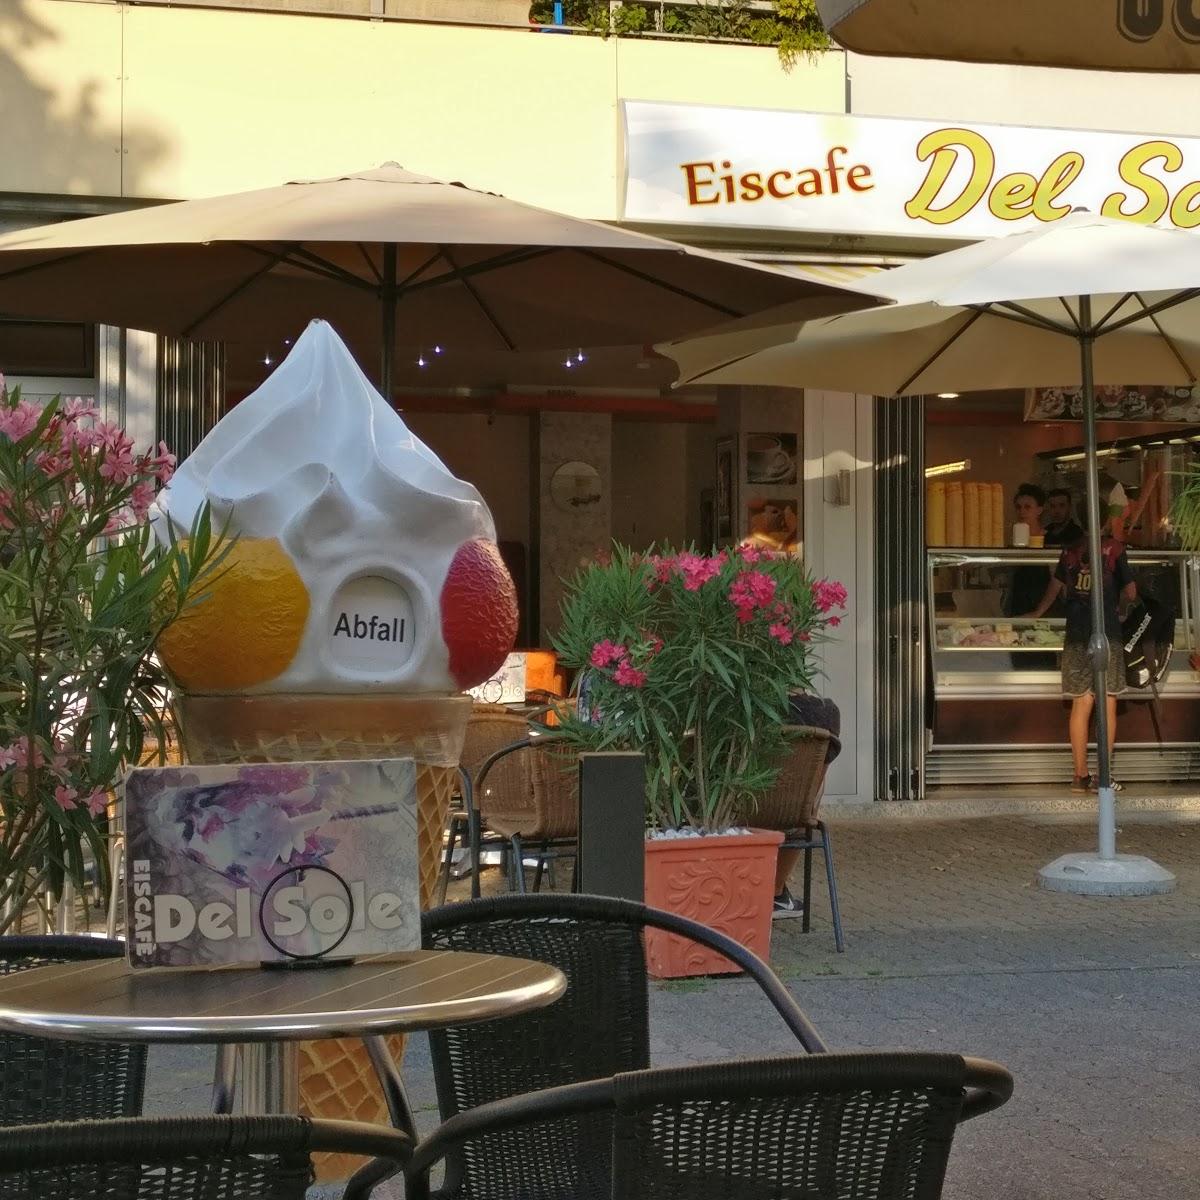 Restaurant "Eiscafé Del Sole" in Speyer